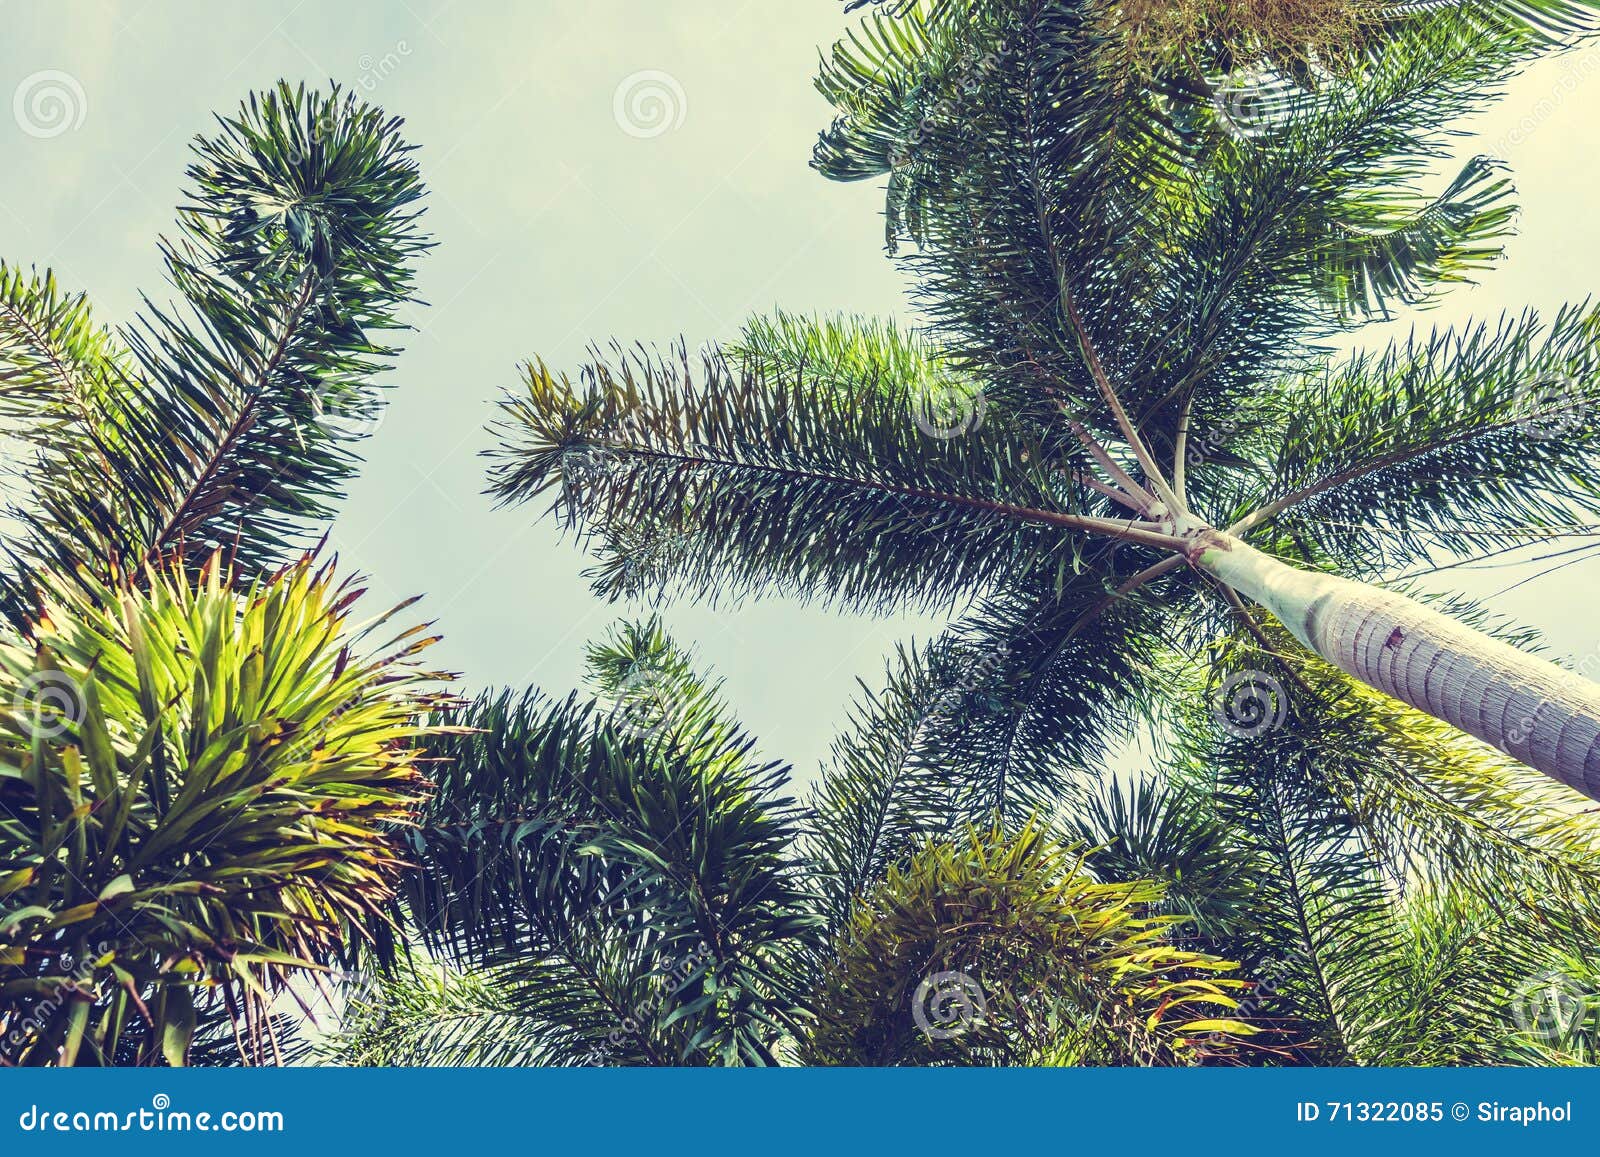 Palmera del coco imagen de archivo. Imagen de hoja, tropical - 71322085